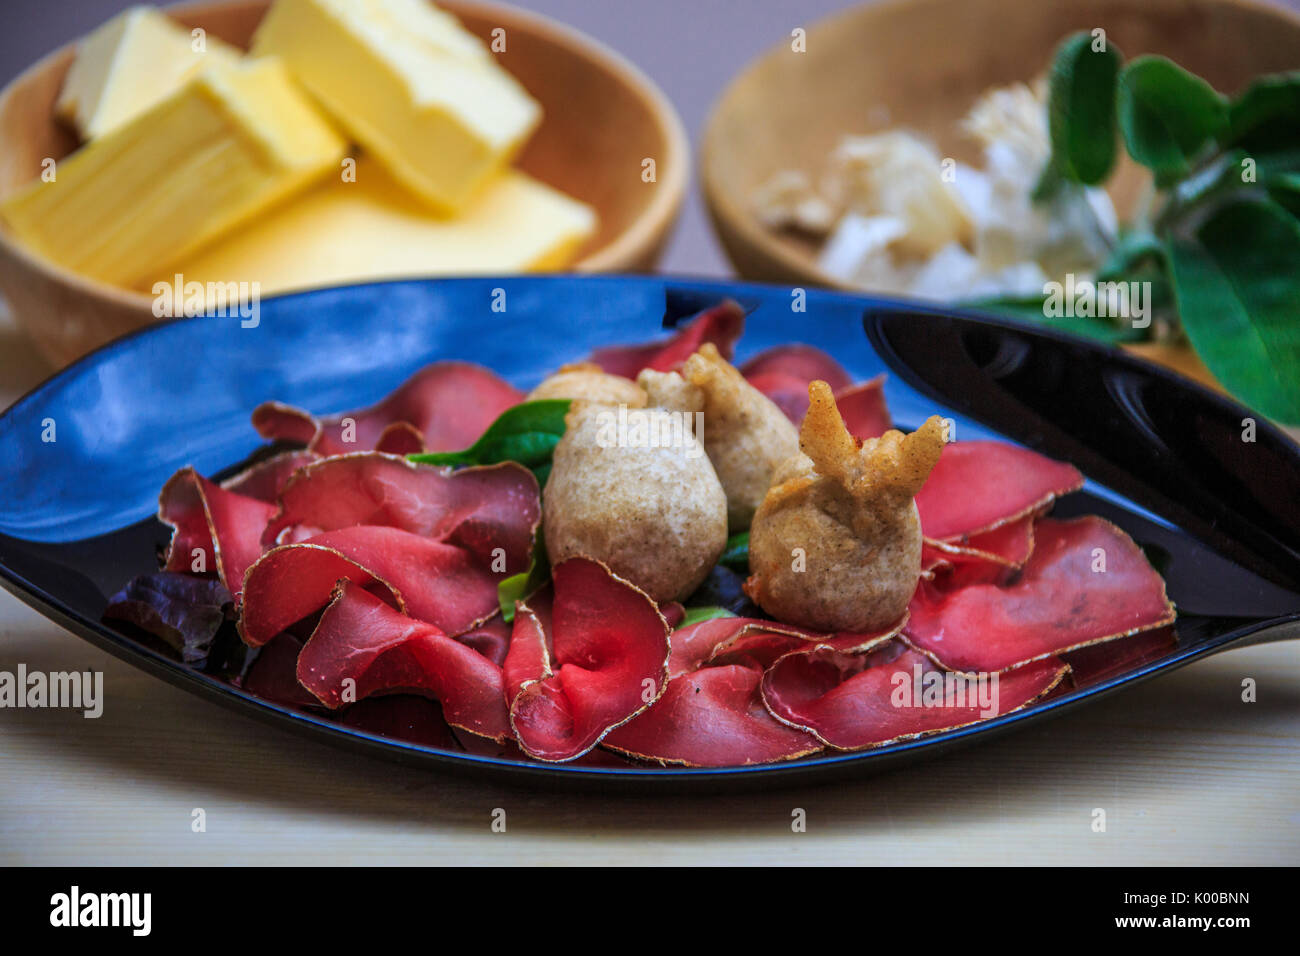 Sciatt est l'entrée d'une cuisine typique de la Valteline. La Lombardie. L'Italie. L'Europe Banque D'Images